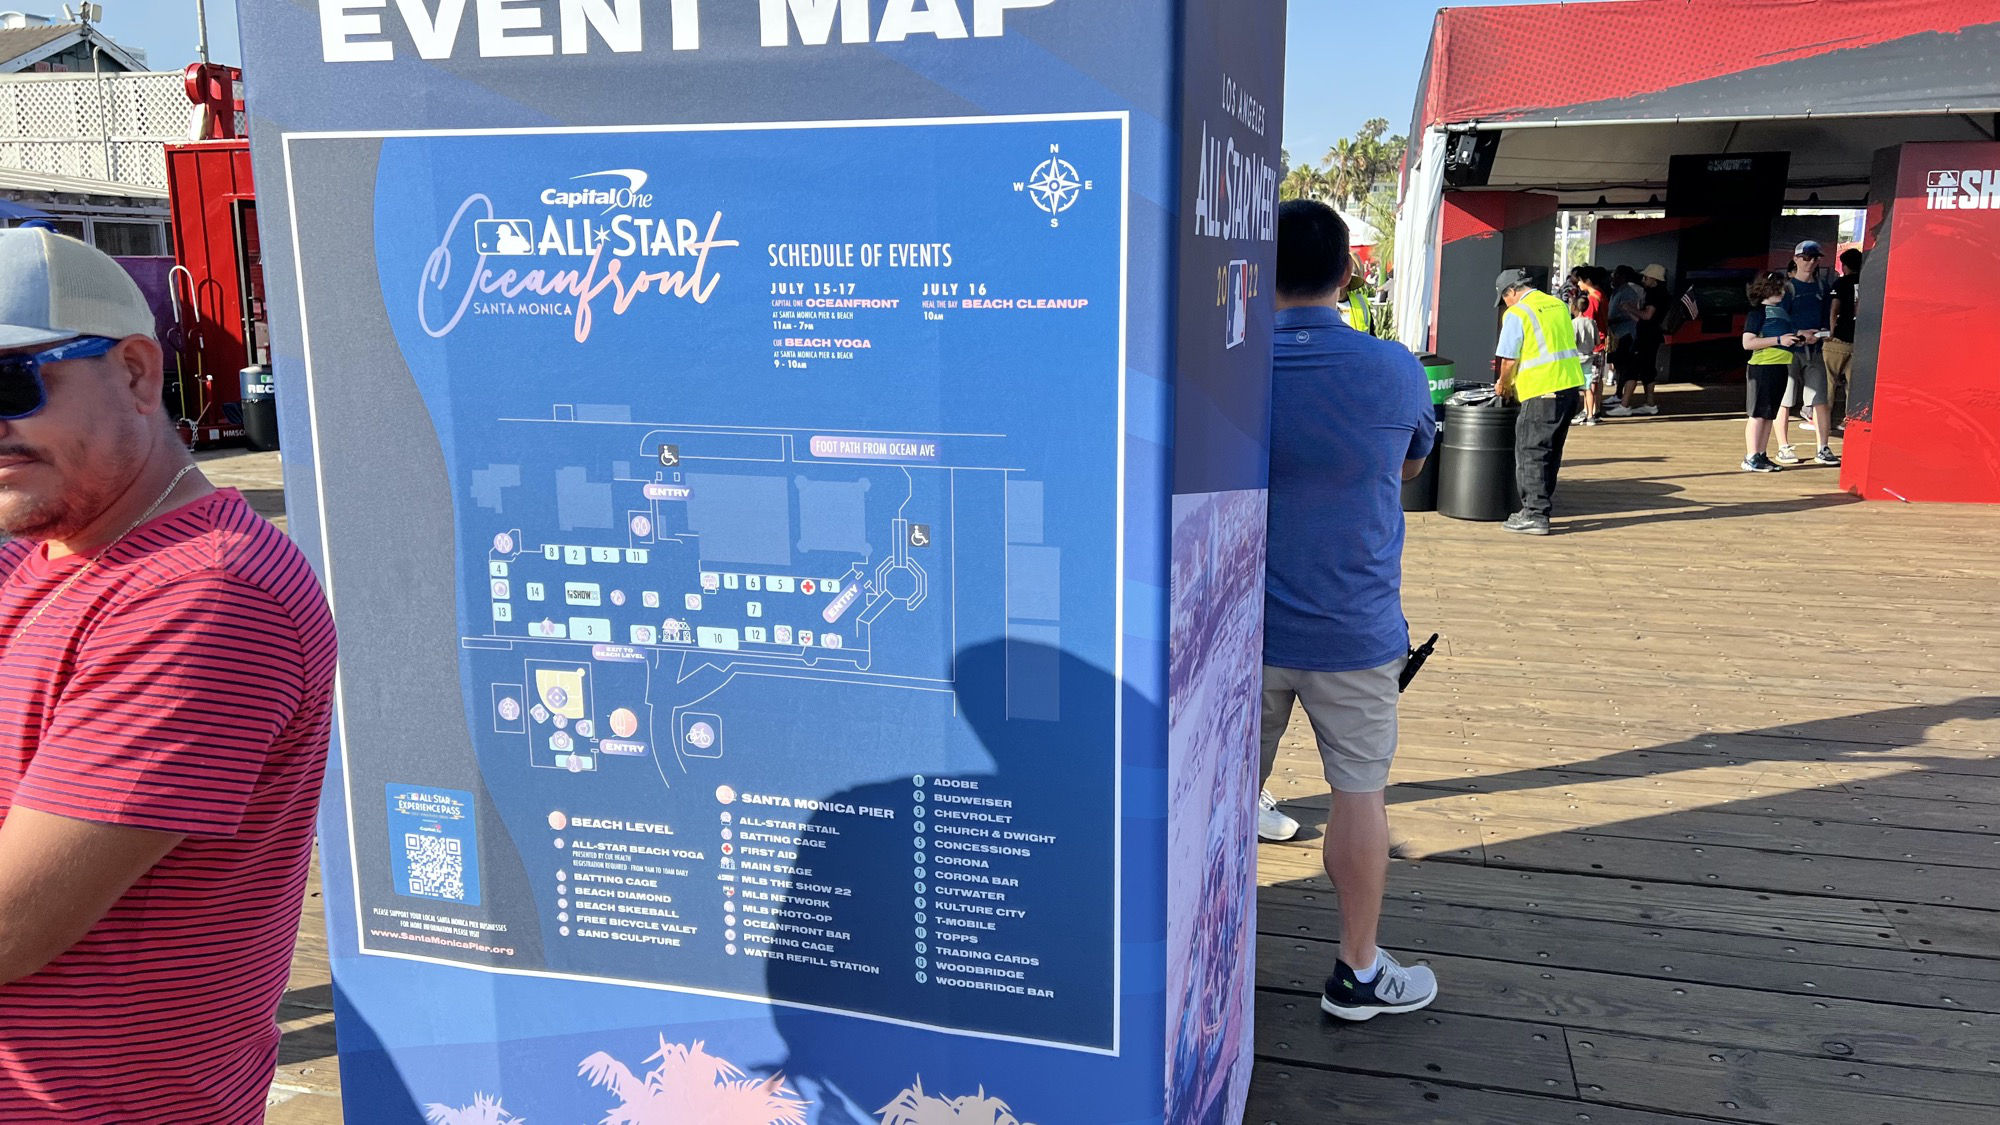 All Star Week Santa Monica Pier Event Map